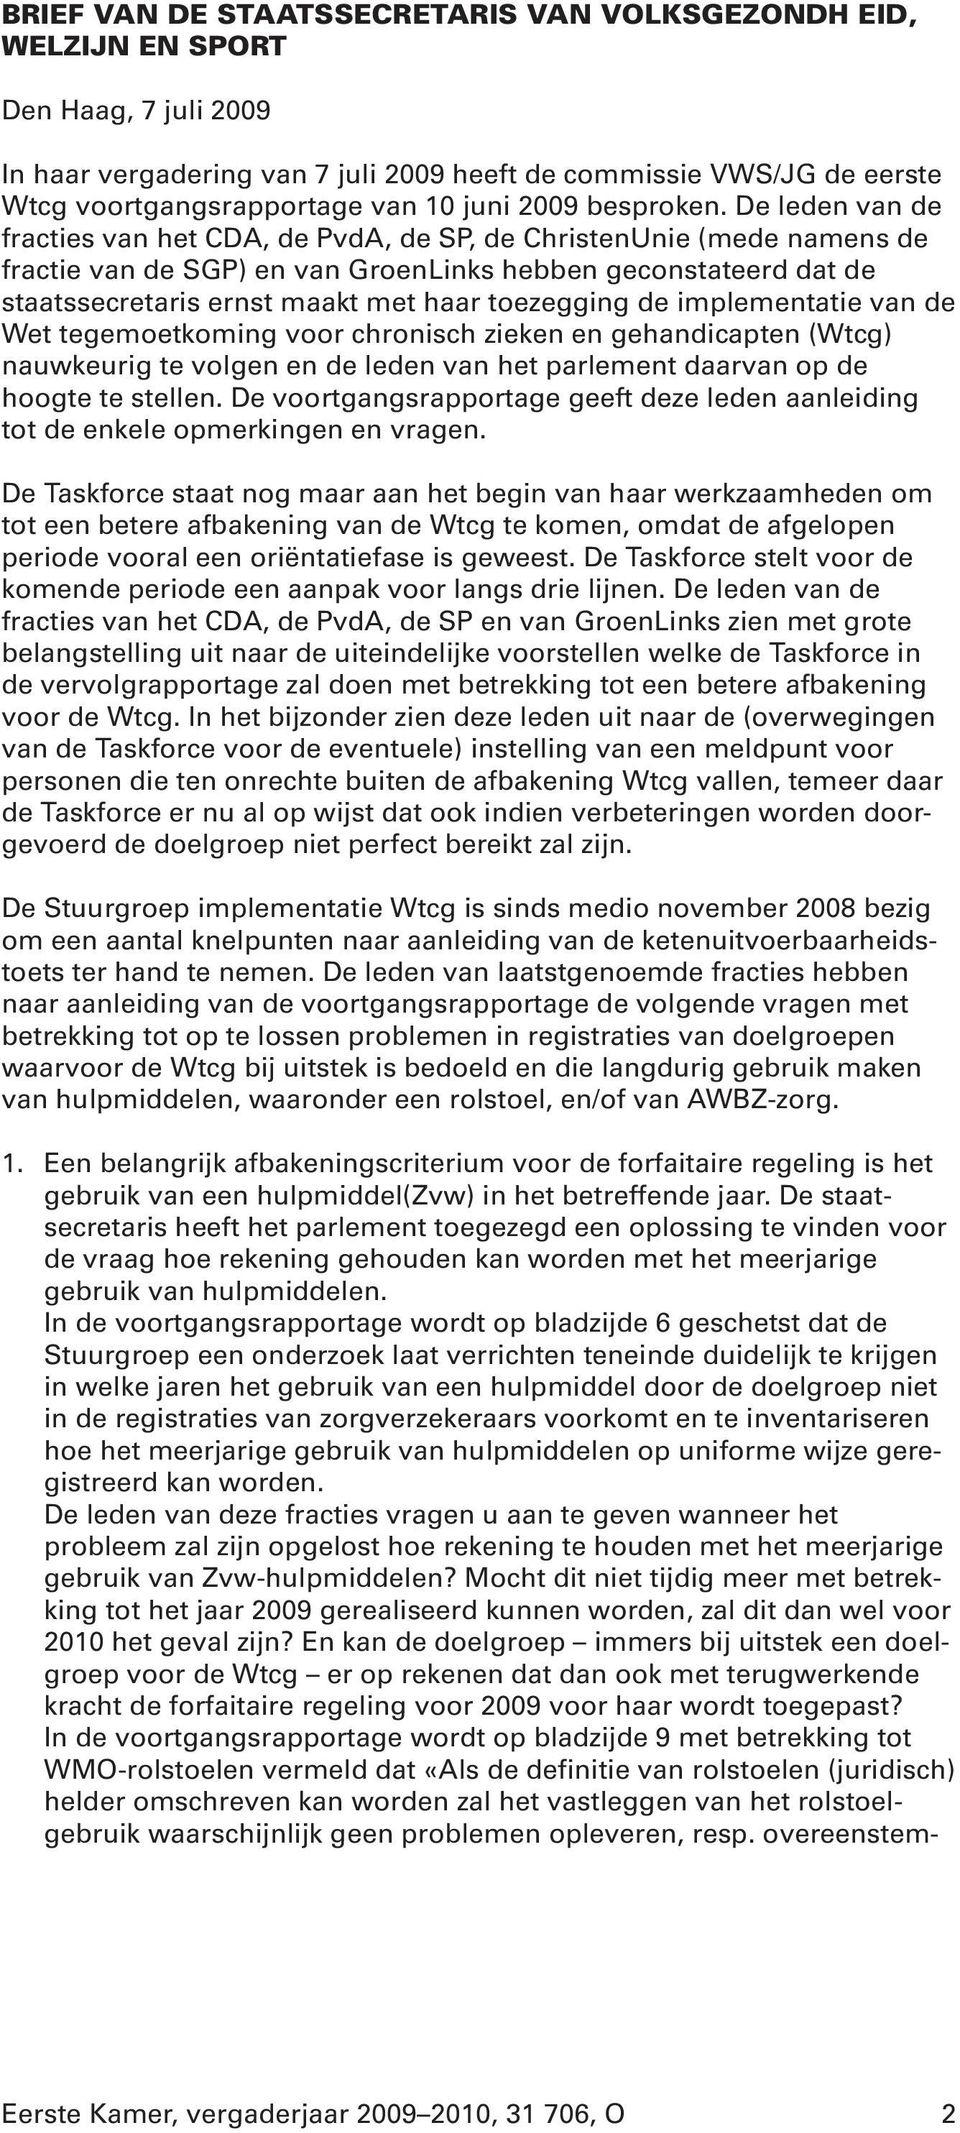 De leden van de fracties van het CDA, de PvdA, de SP, de ChristenUnie (mede namens de fractie van de SGP) en van GroenLinks hebben geconstateerd dat de staatssecretaris ernst maakt met haar